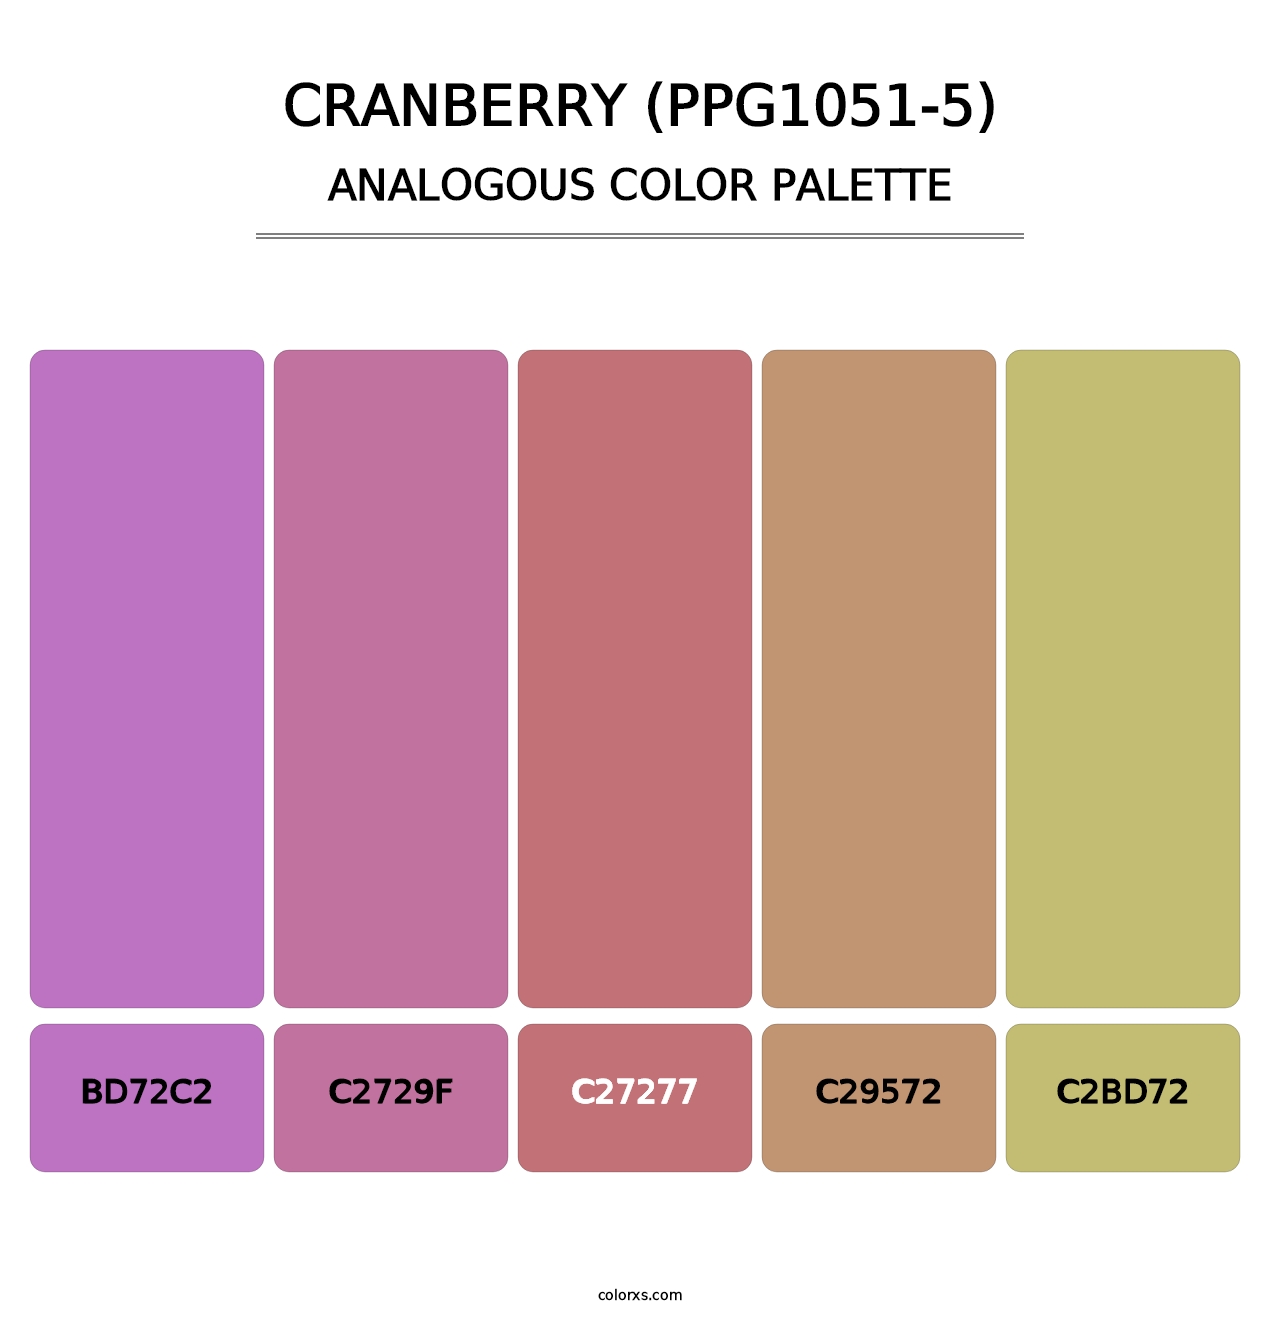 Cranberry (PPG1051-5) - Analogous Color Palette